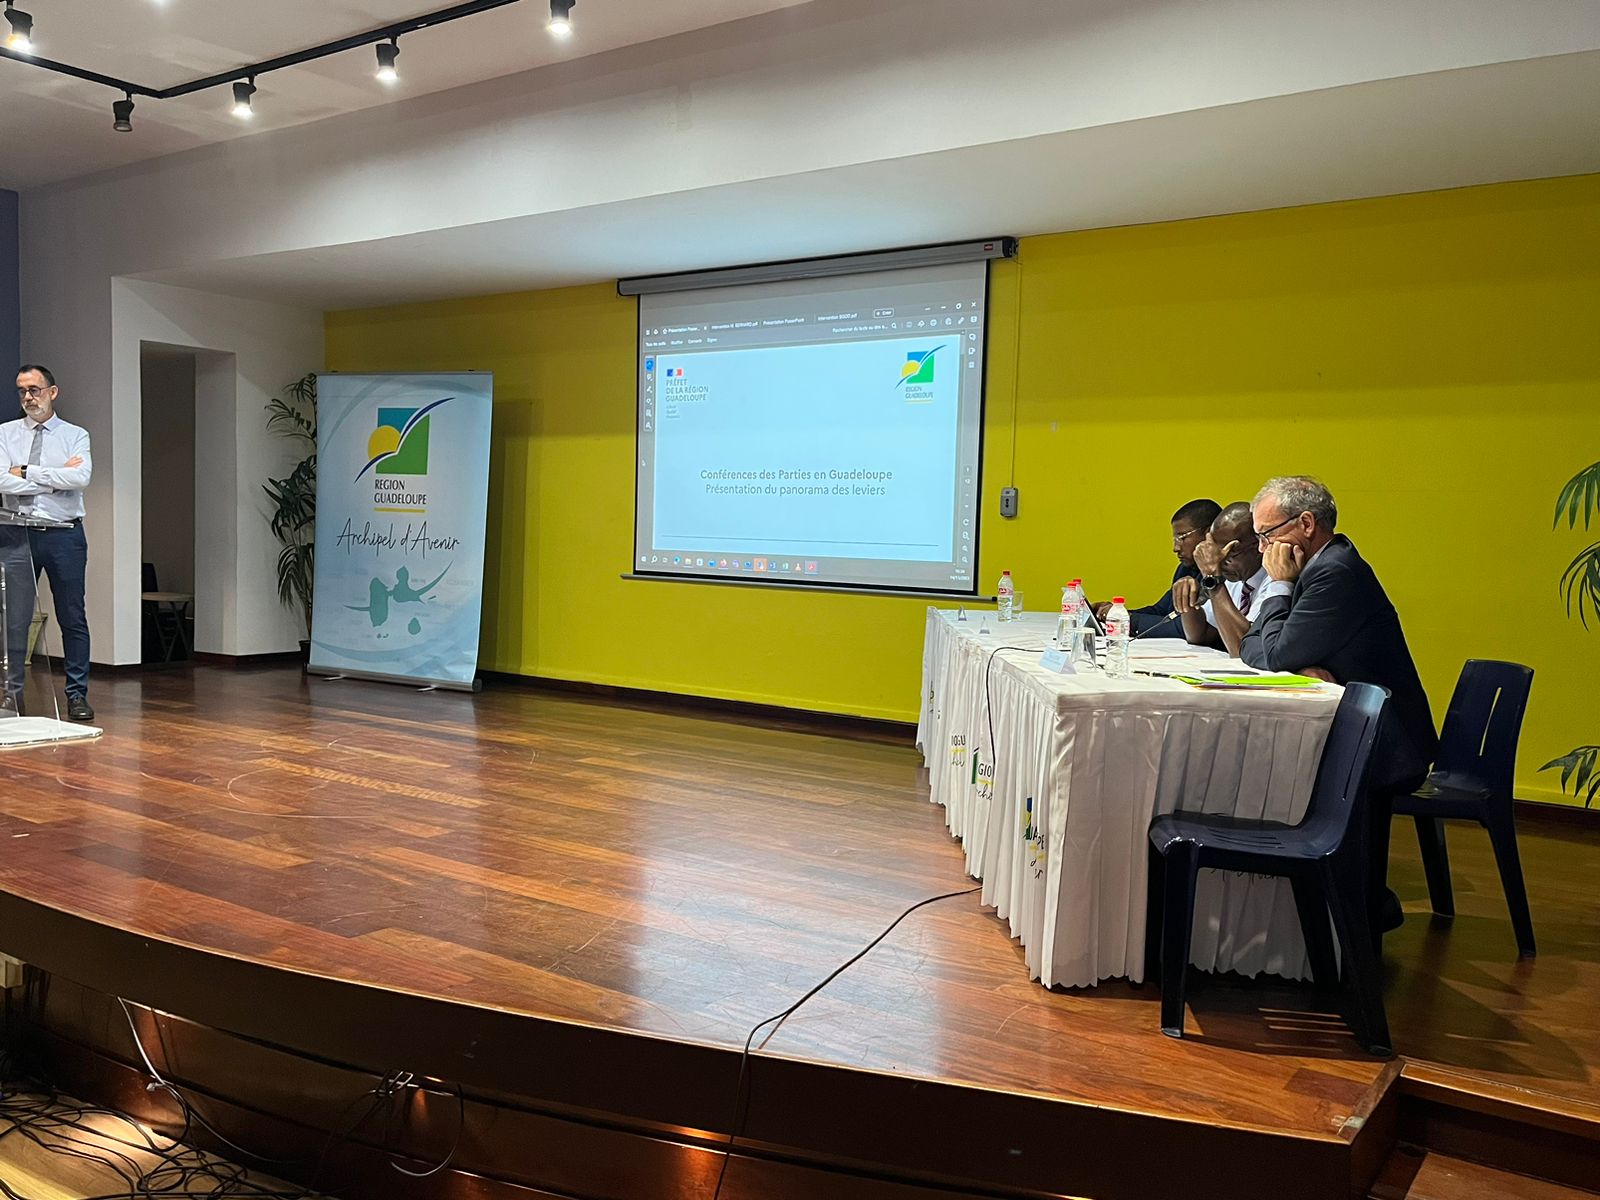     La Guadeloupe : première région de France à entrer dans la COP Régional sur la transition écologique

